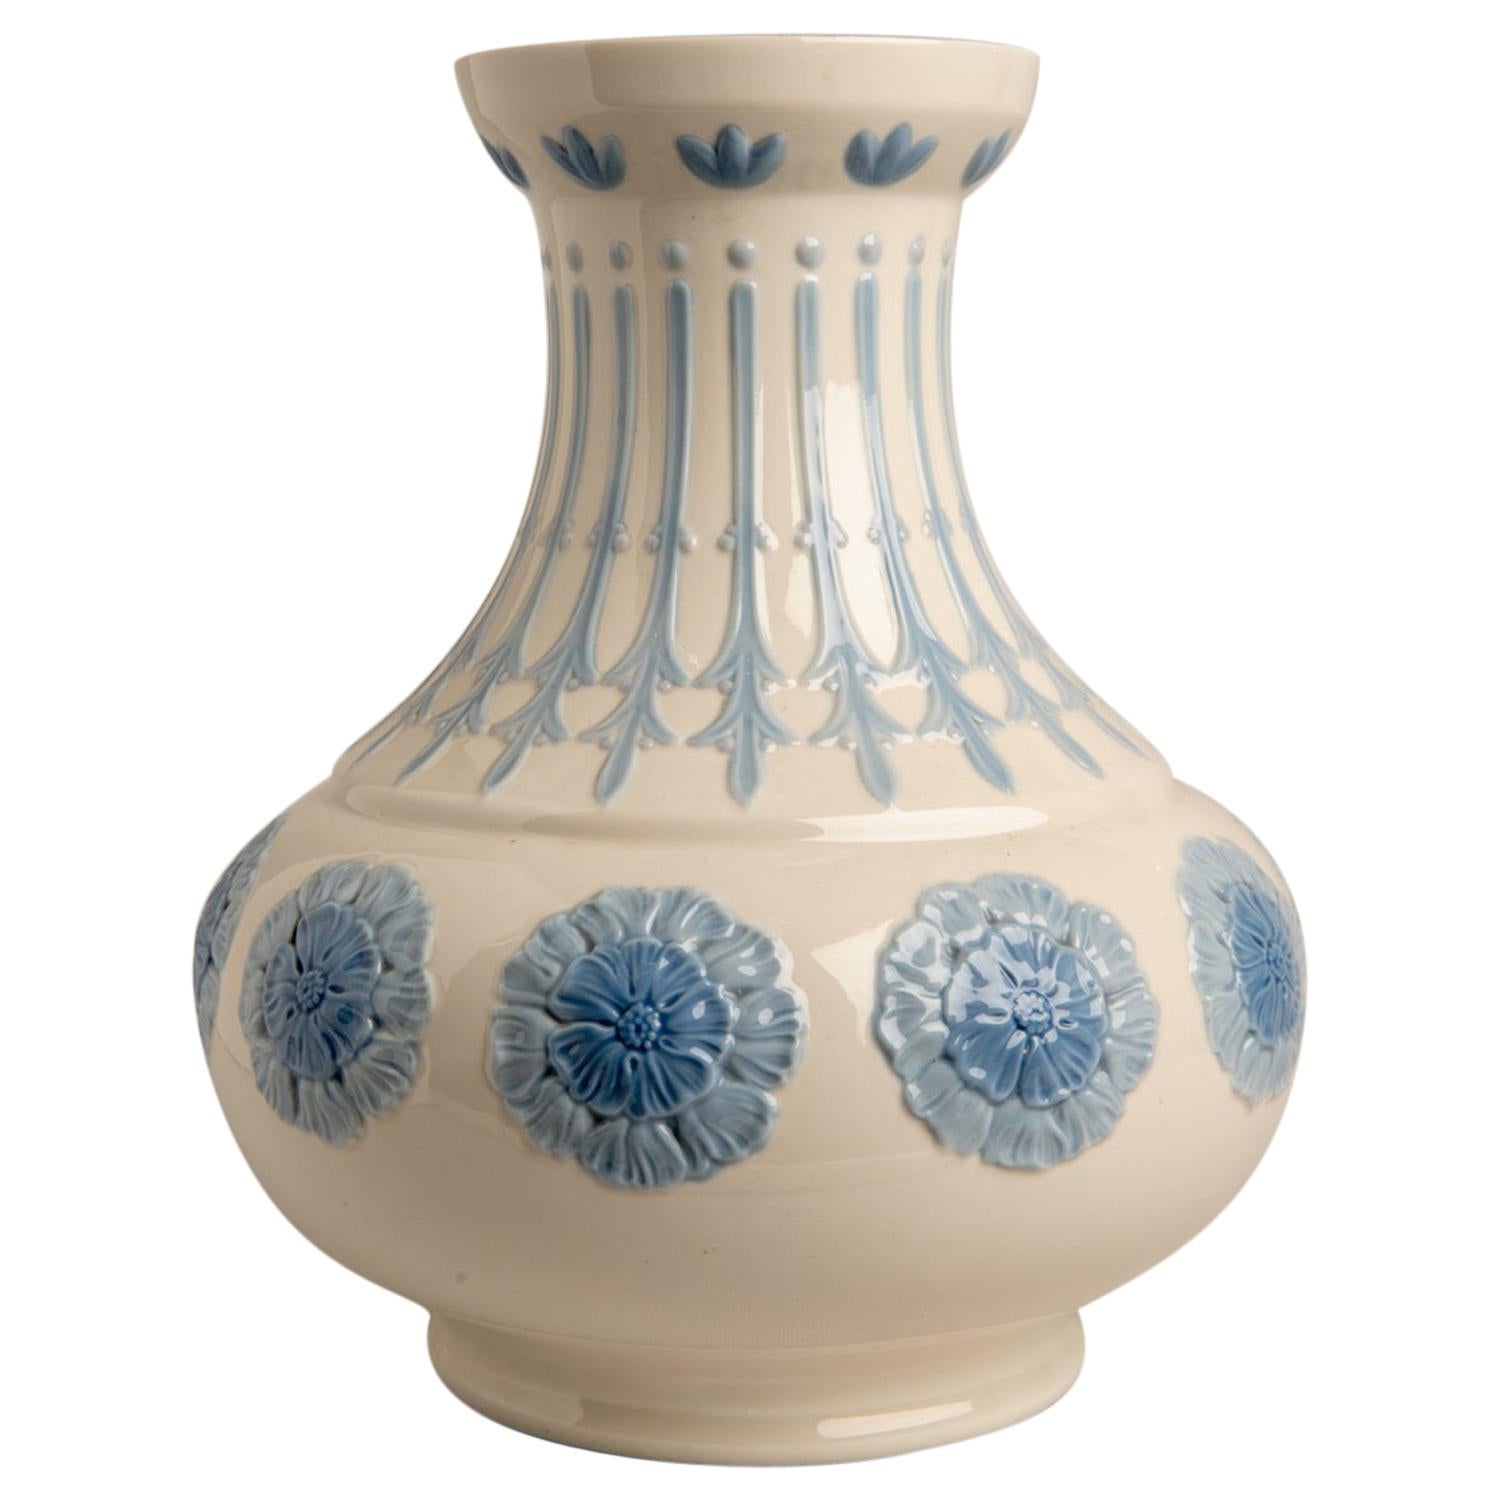  Old Spanish Ceramic Vase For Sale